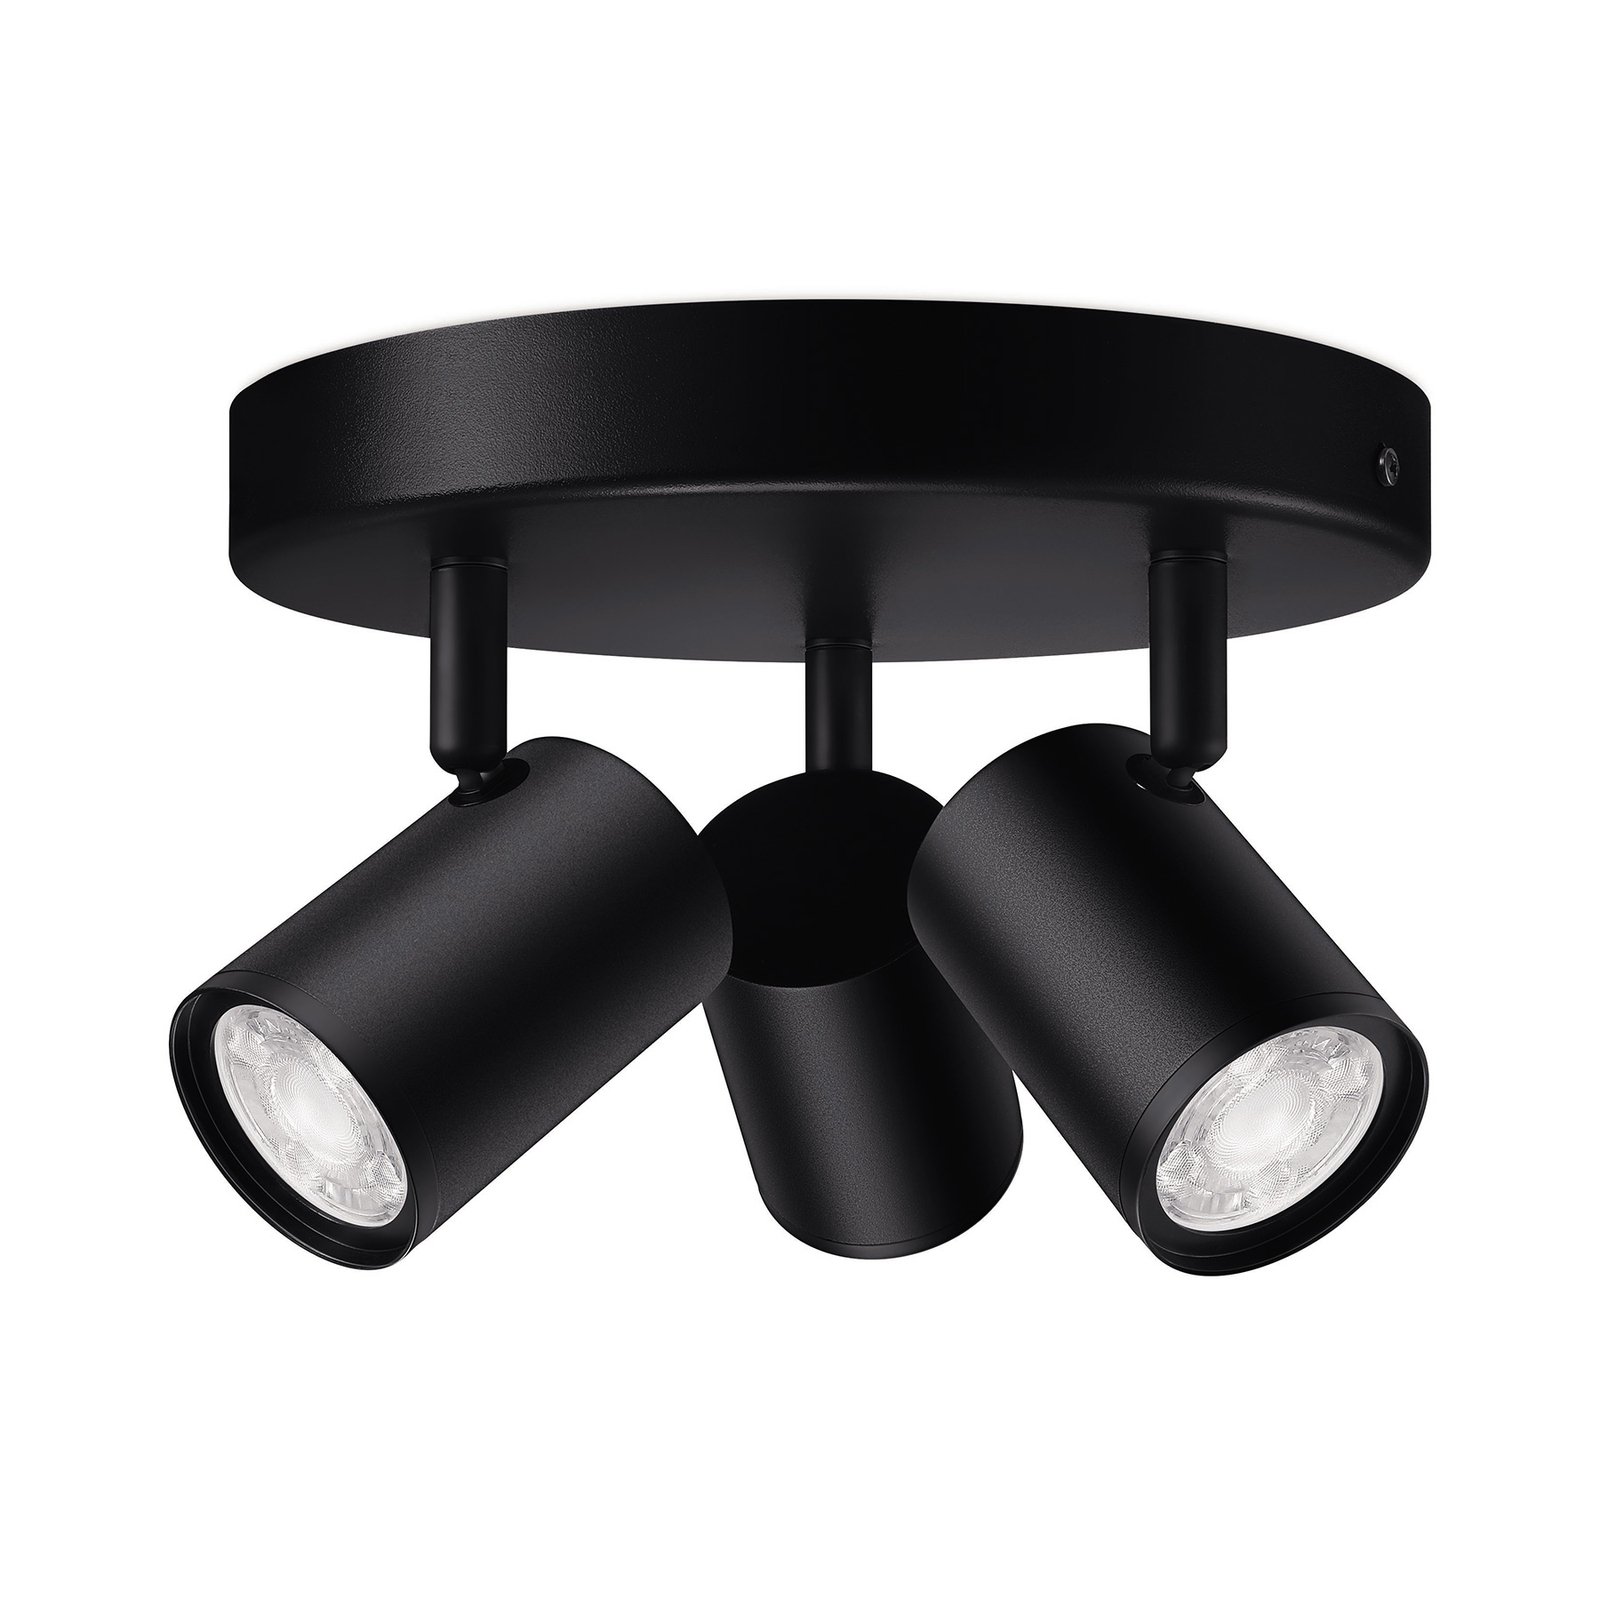 WiZ LED-Deckenspot Imageo, 3-flg. rund, schwarz